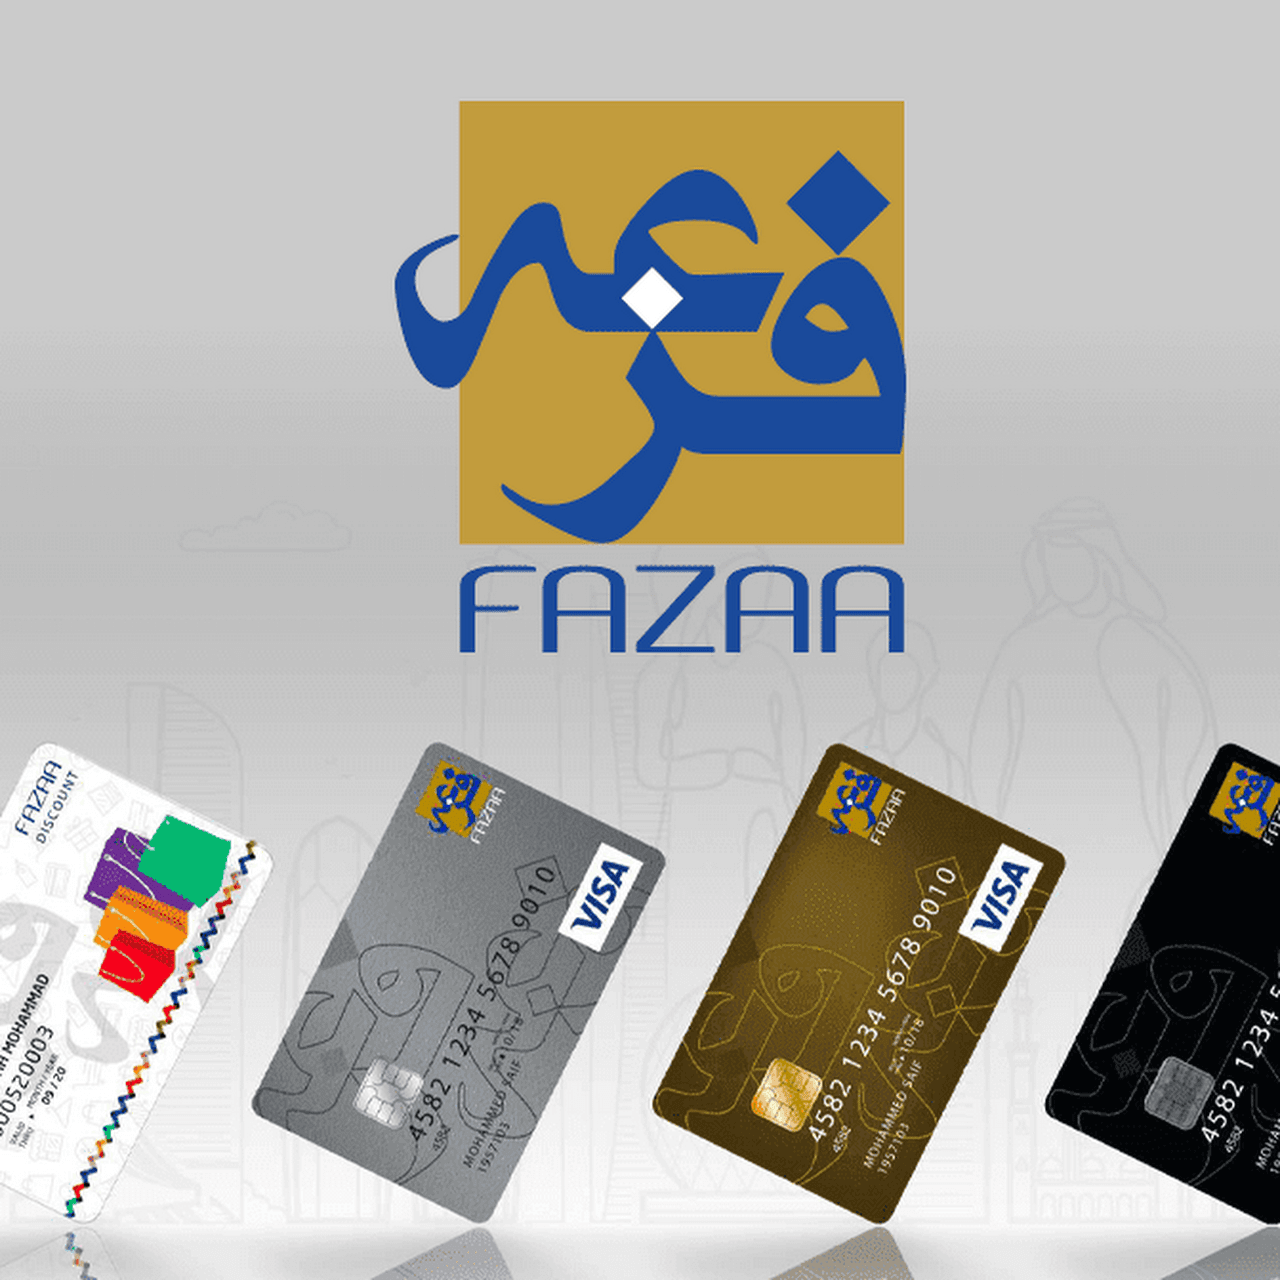 كيفية التسجيل في بطاقة فزعة مجانا fazaa.ae في الإمارات